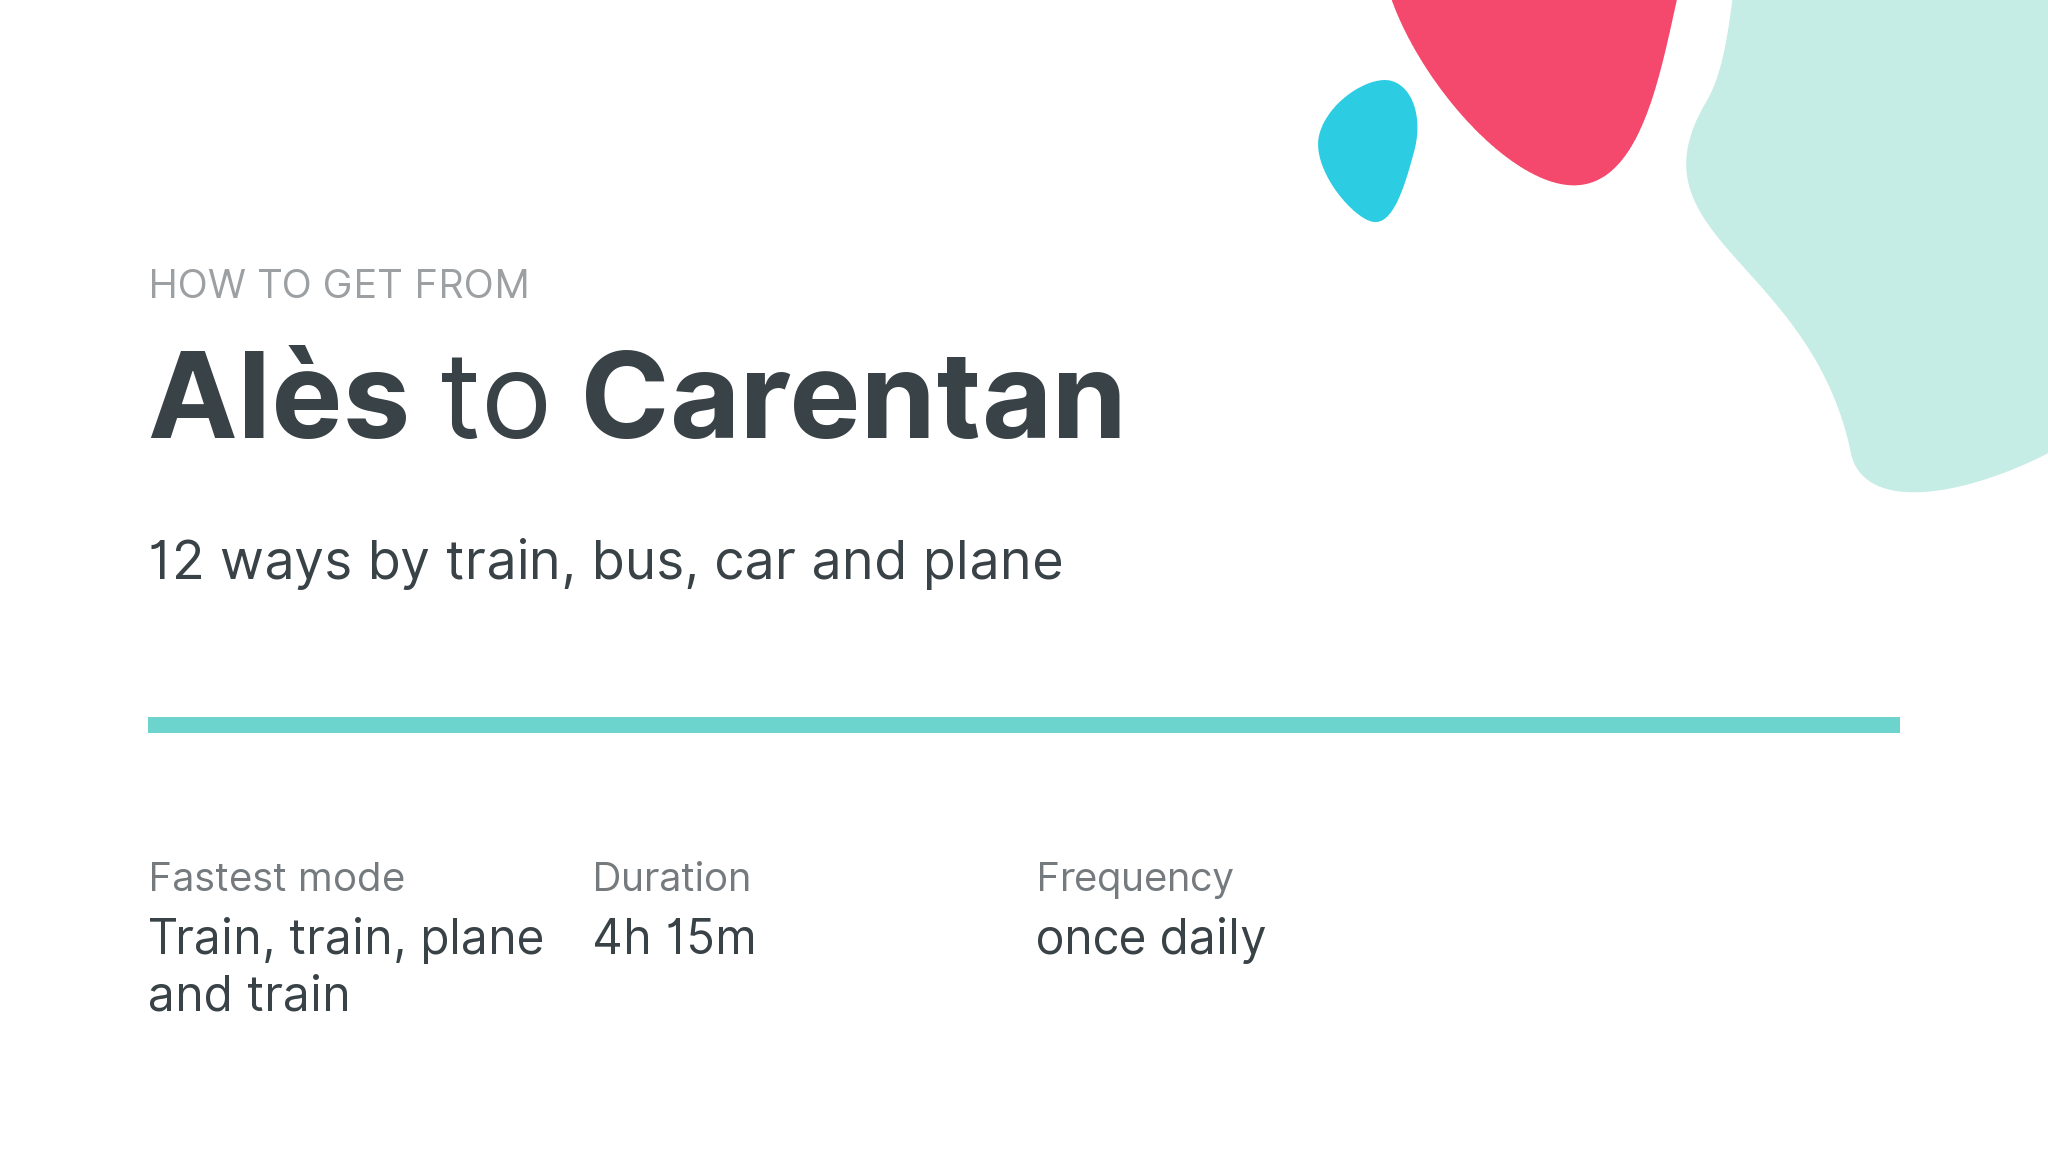 How do I get from Alès to Carentan